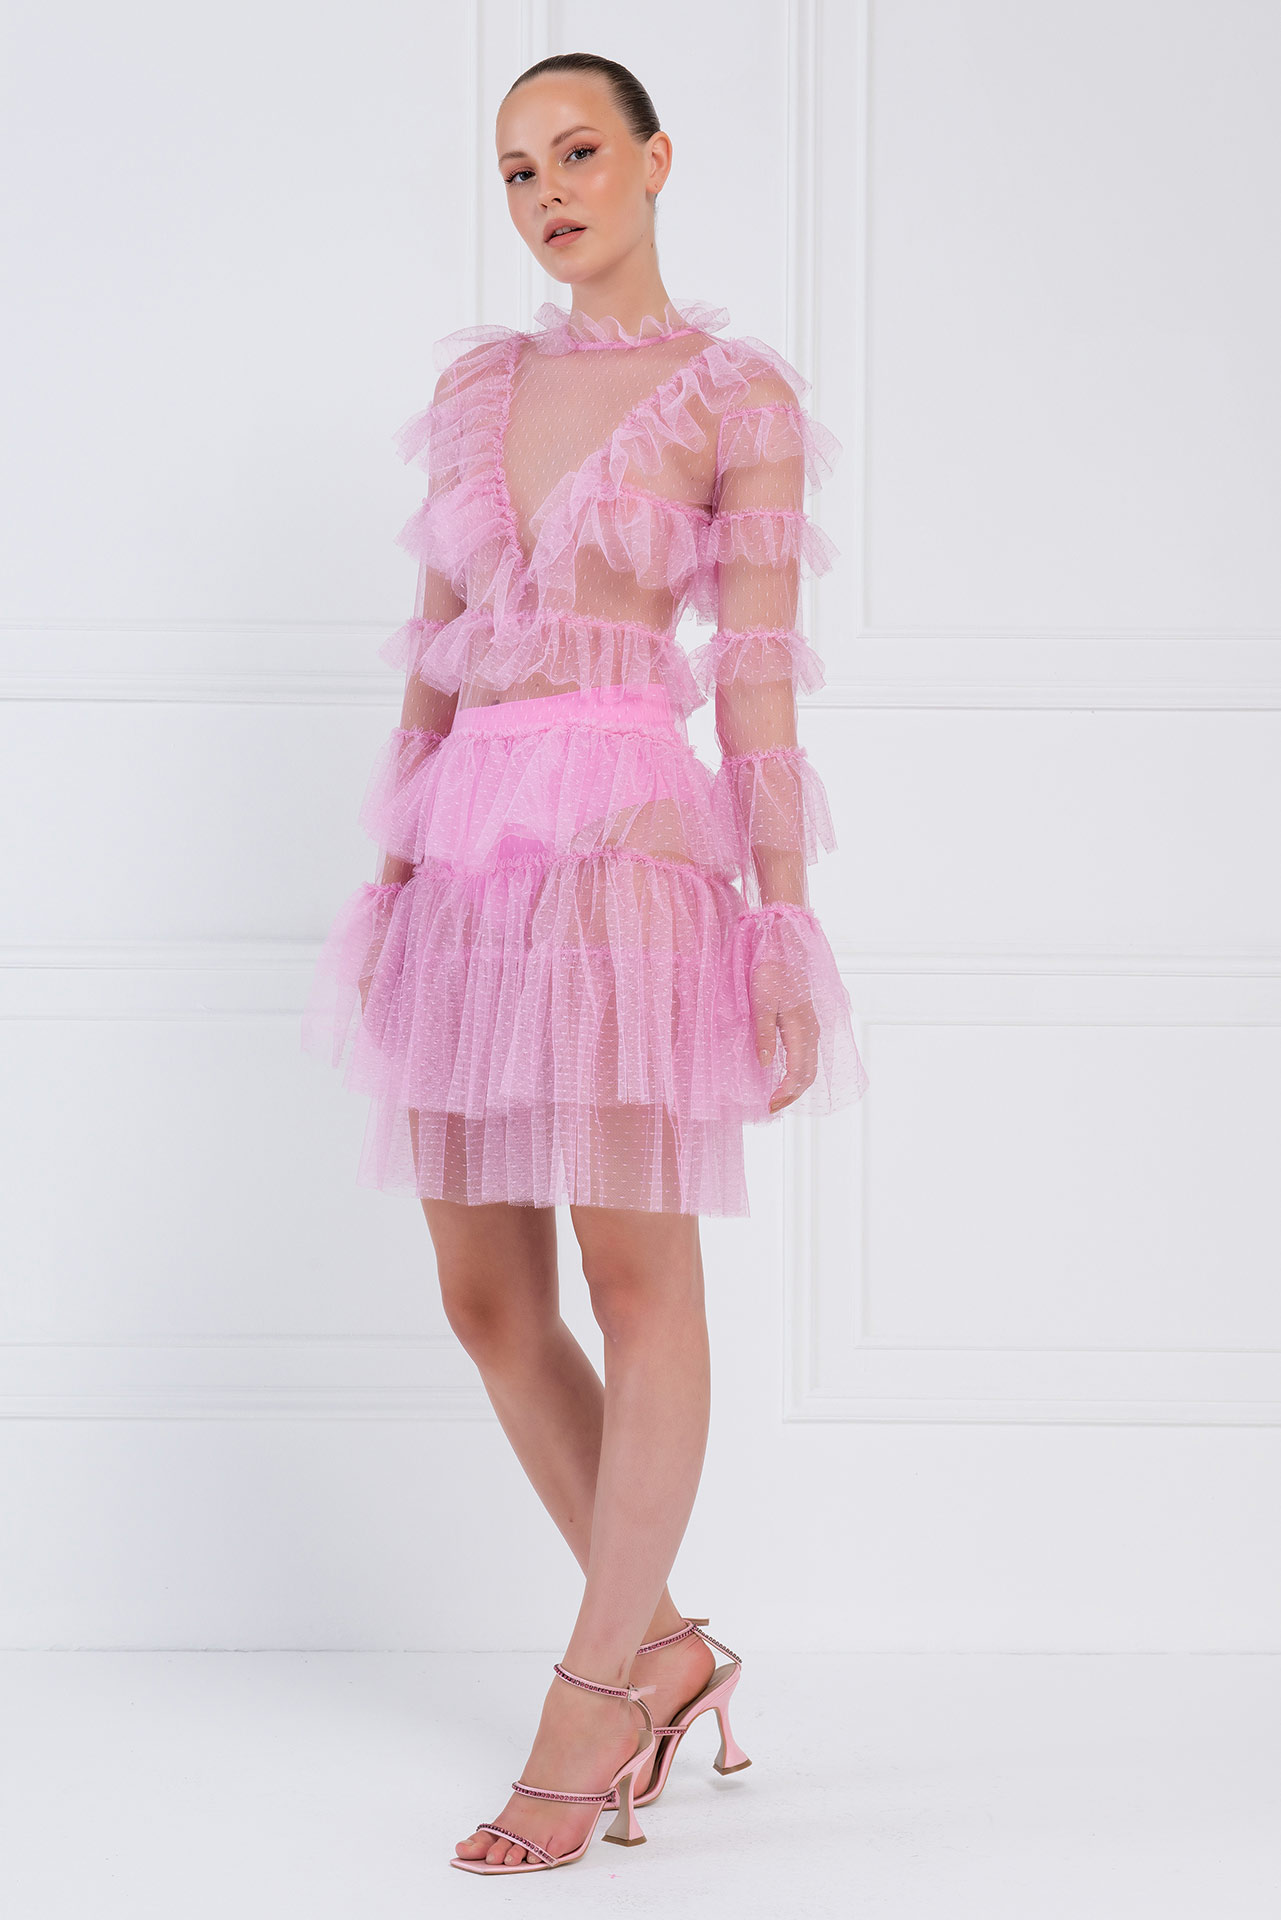 Прозрачное Платье с Рюшами Pink Фатиновое Мини-Платье